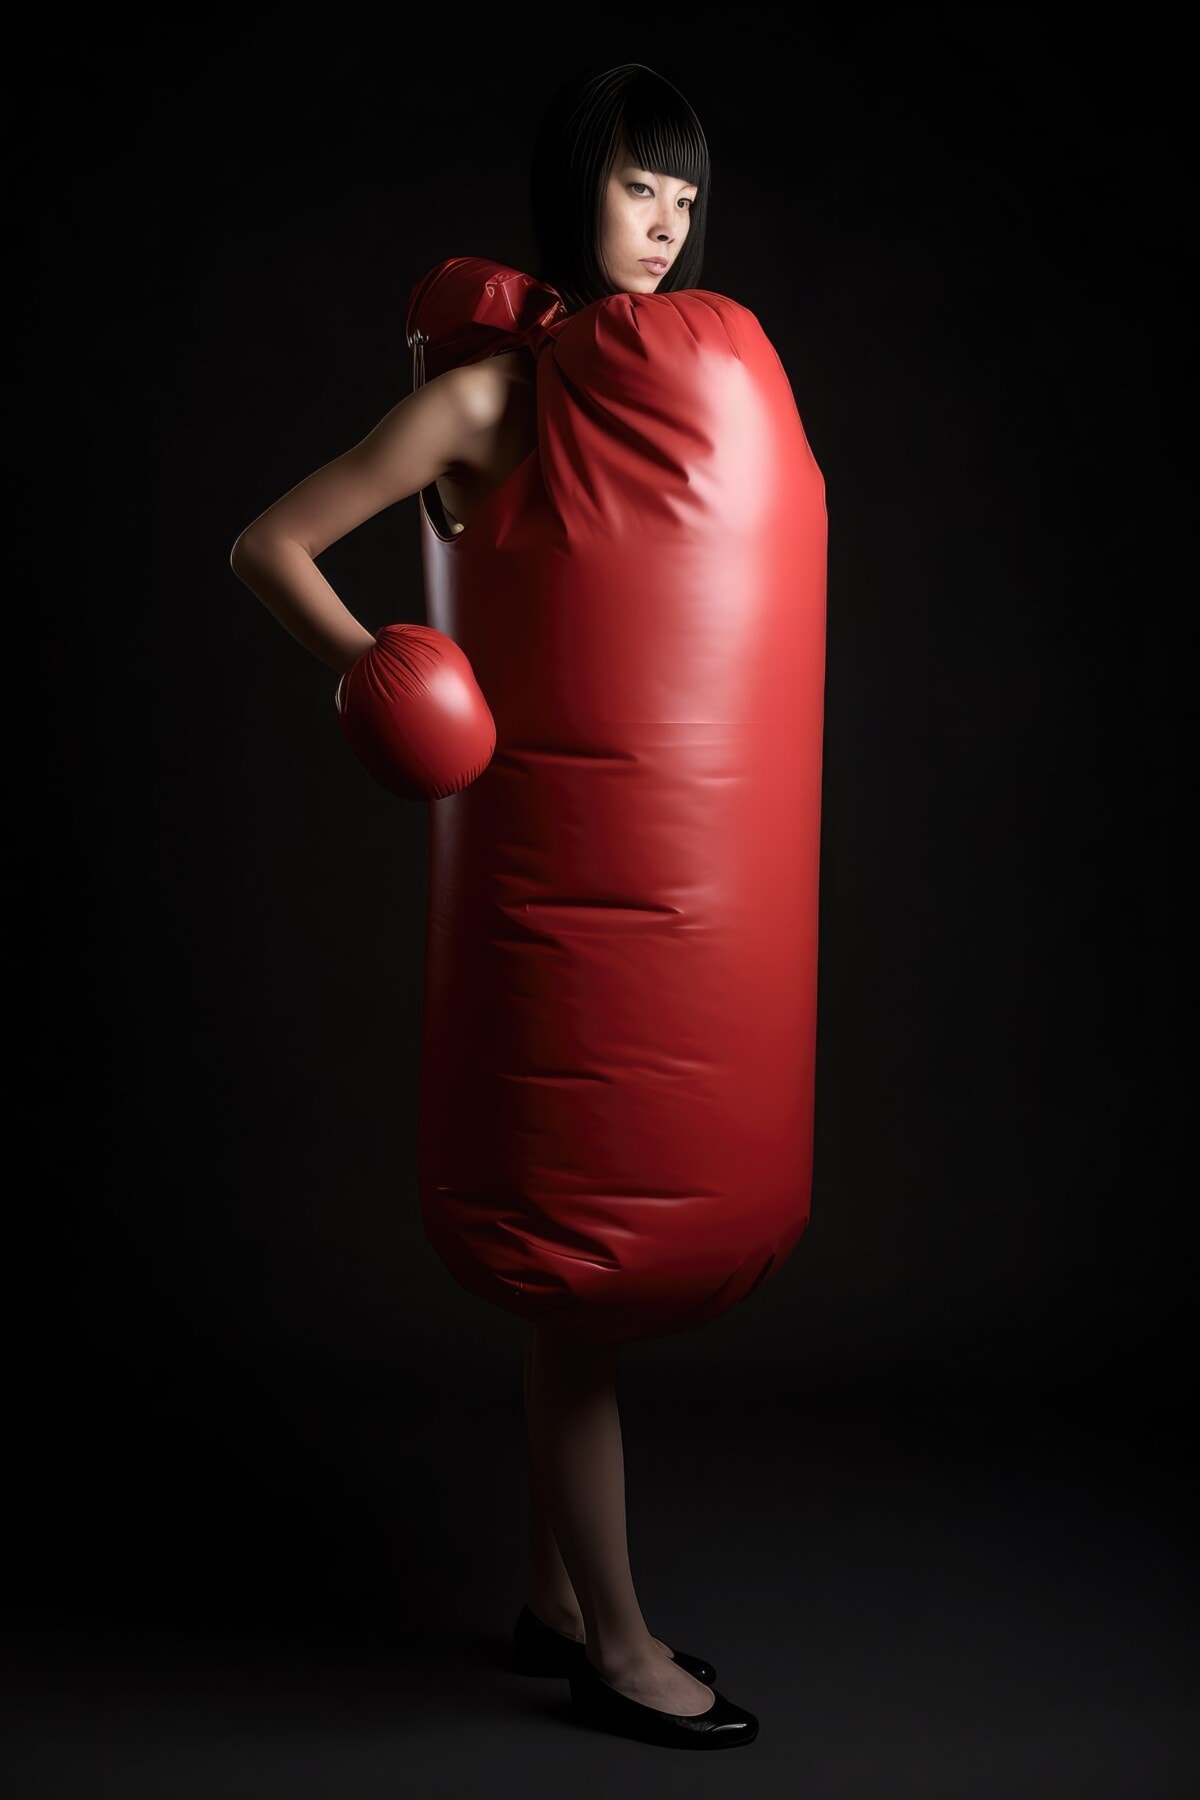 Woman wearing red punching bag